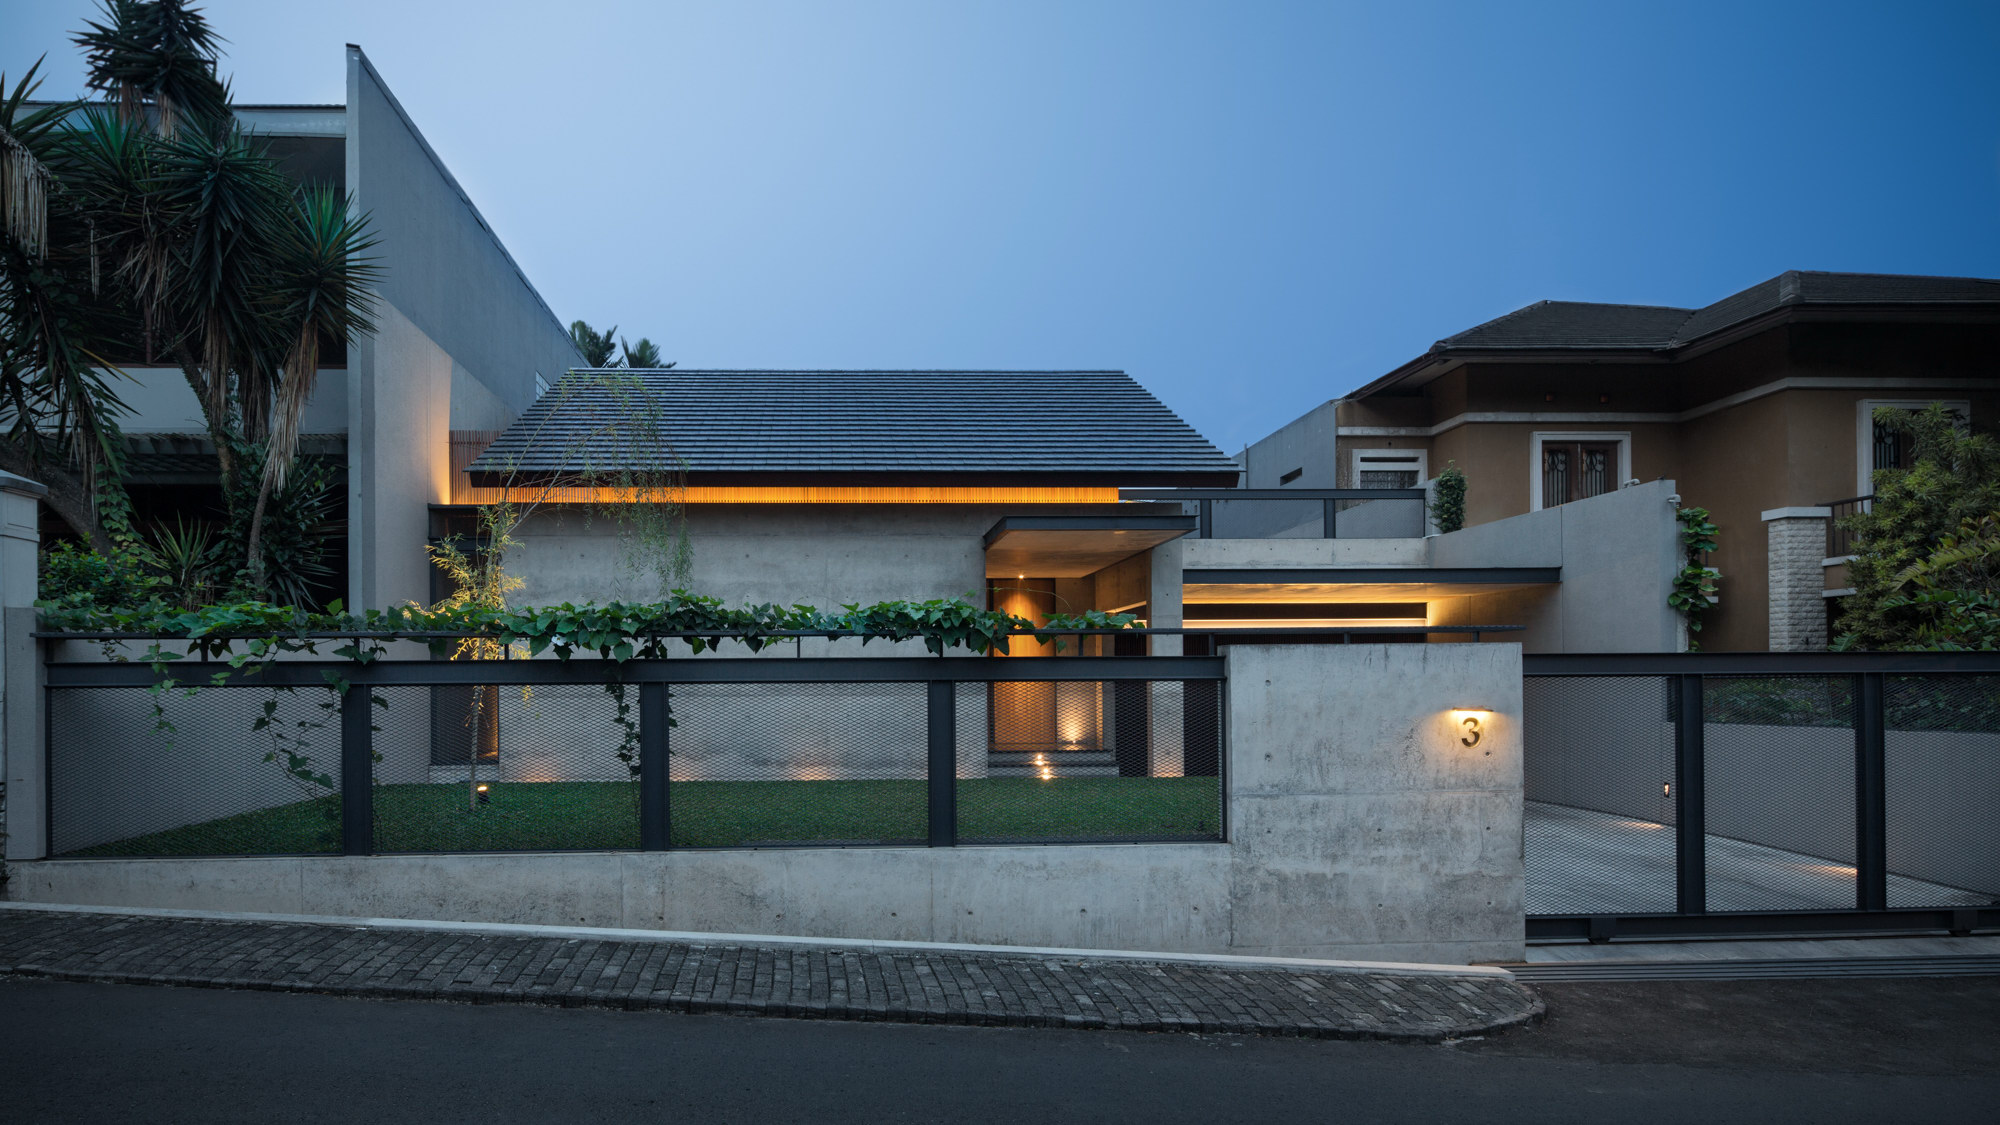 Hikari House by Pranala Associates